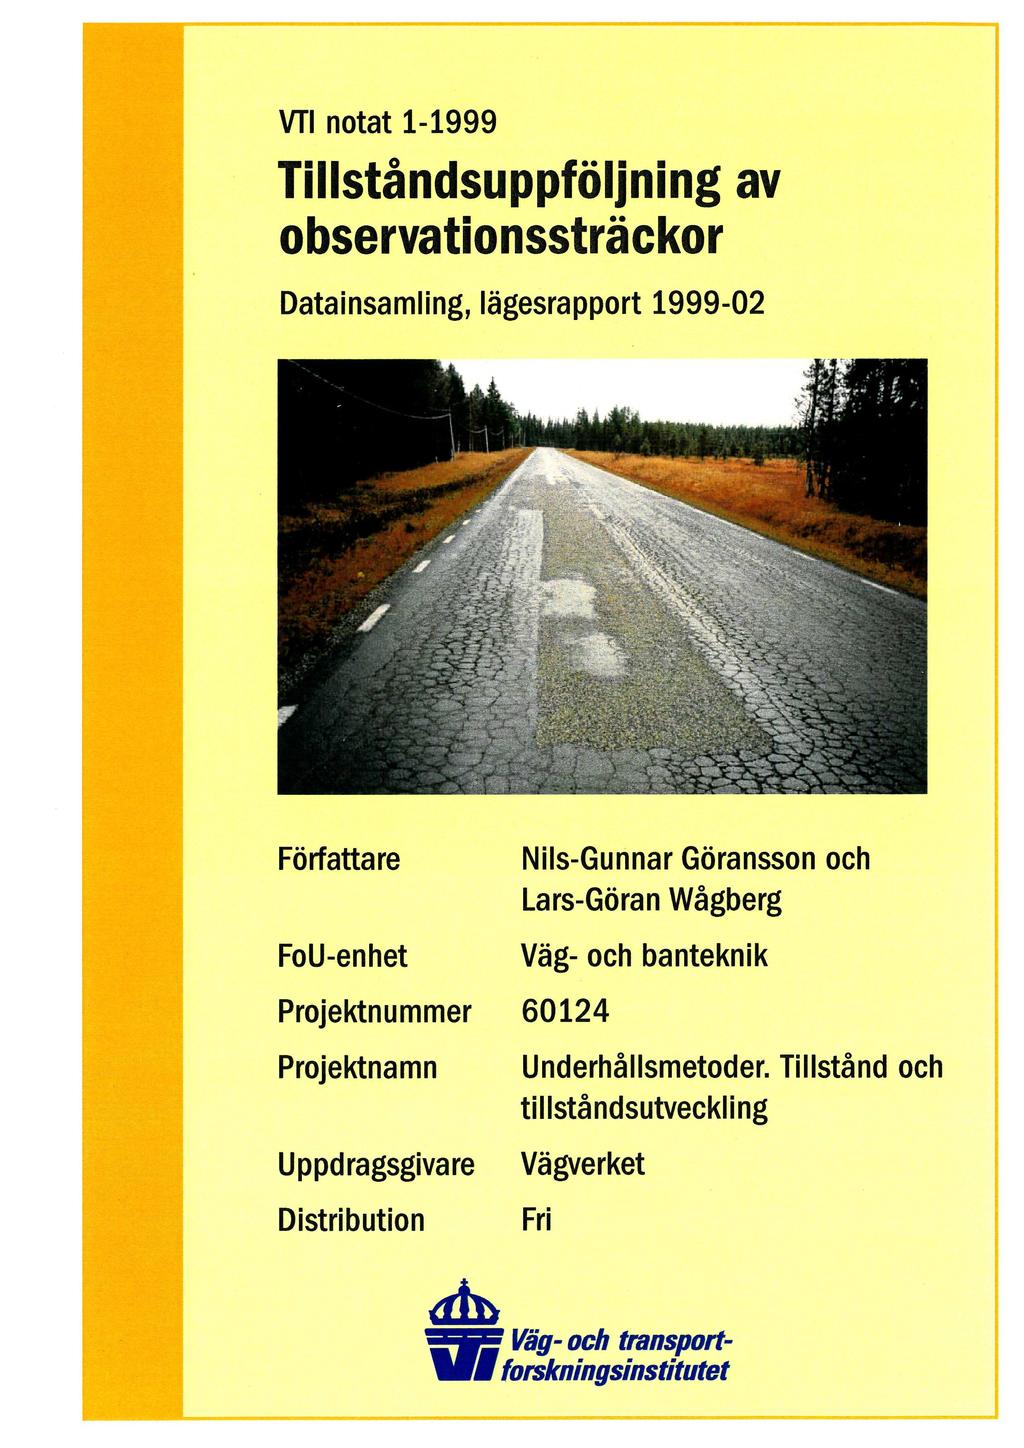 VTI notat 1-1999 Tillståndsuppföljning av observationssträckor Datainsamling, lägesrapport 1999-02 Författare FoU-enhet Nils-Gunnar Göransson och Lars-Göran Wågberg Väg- och